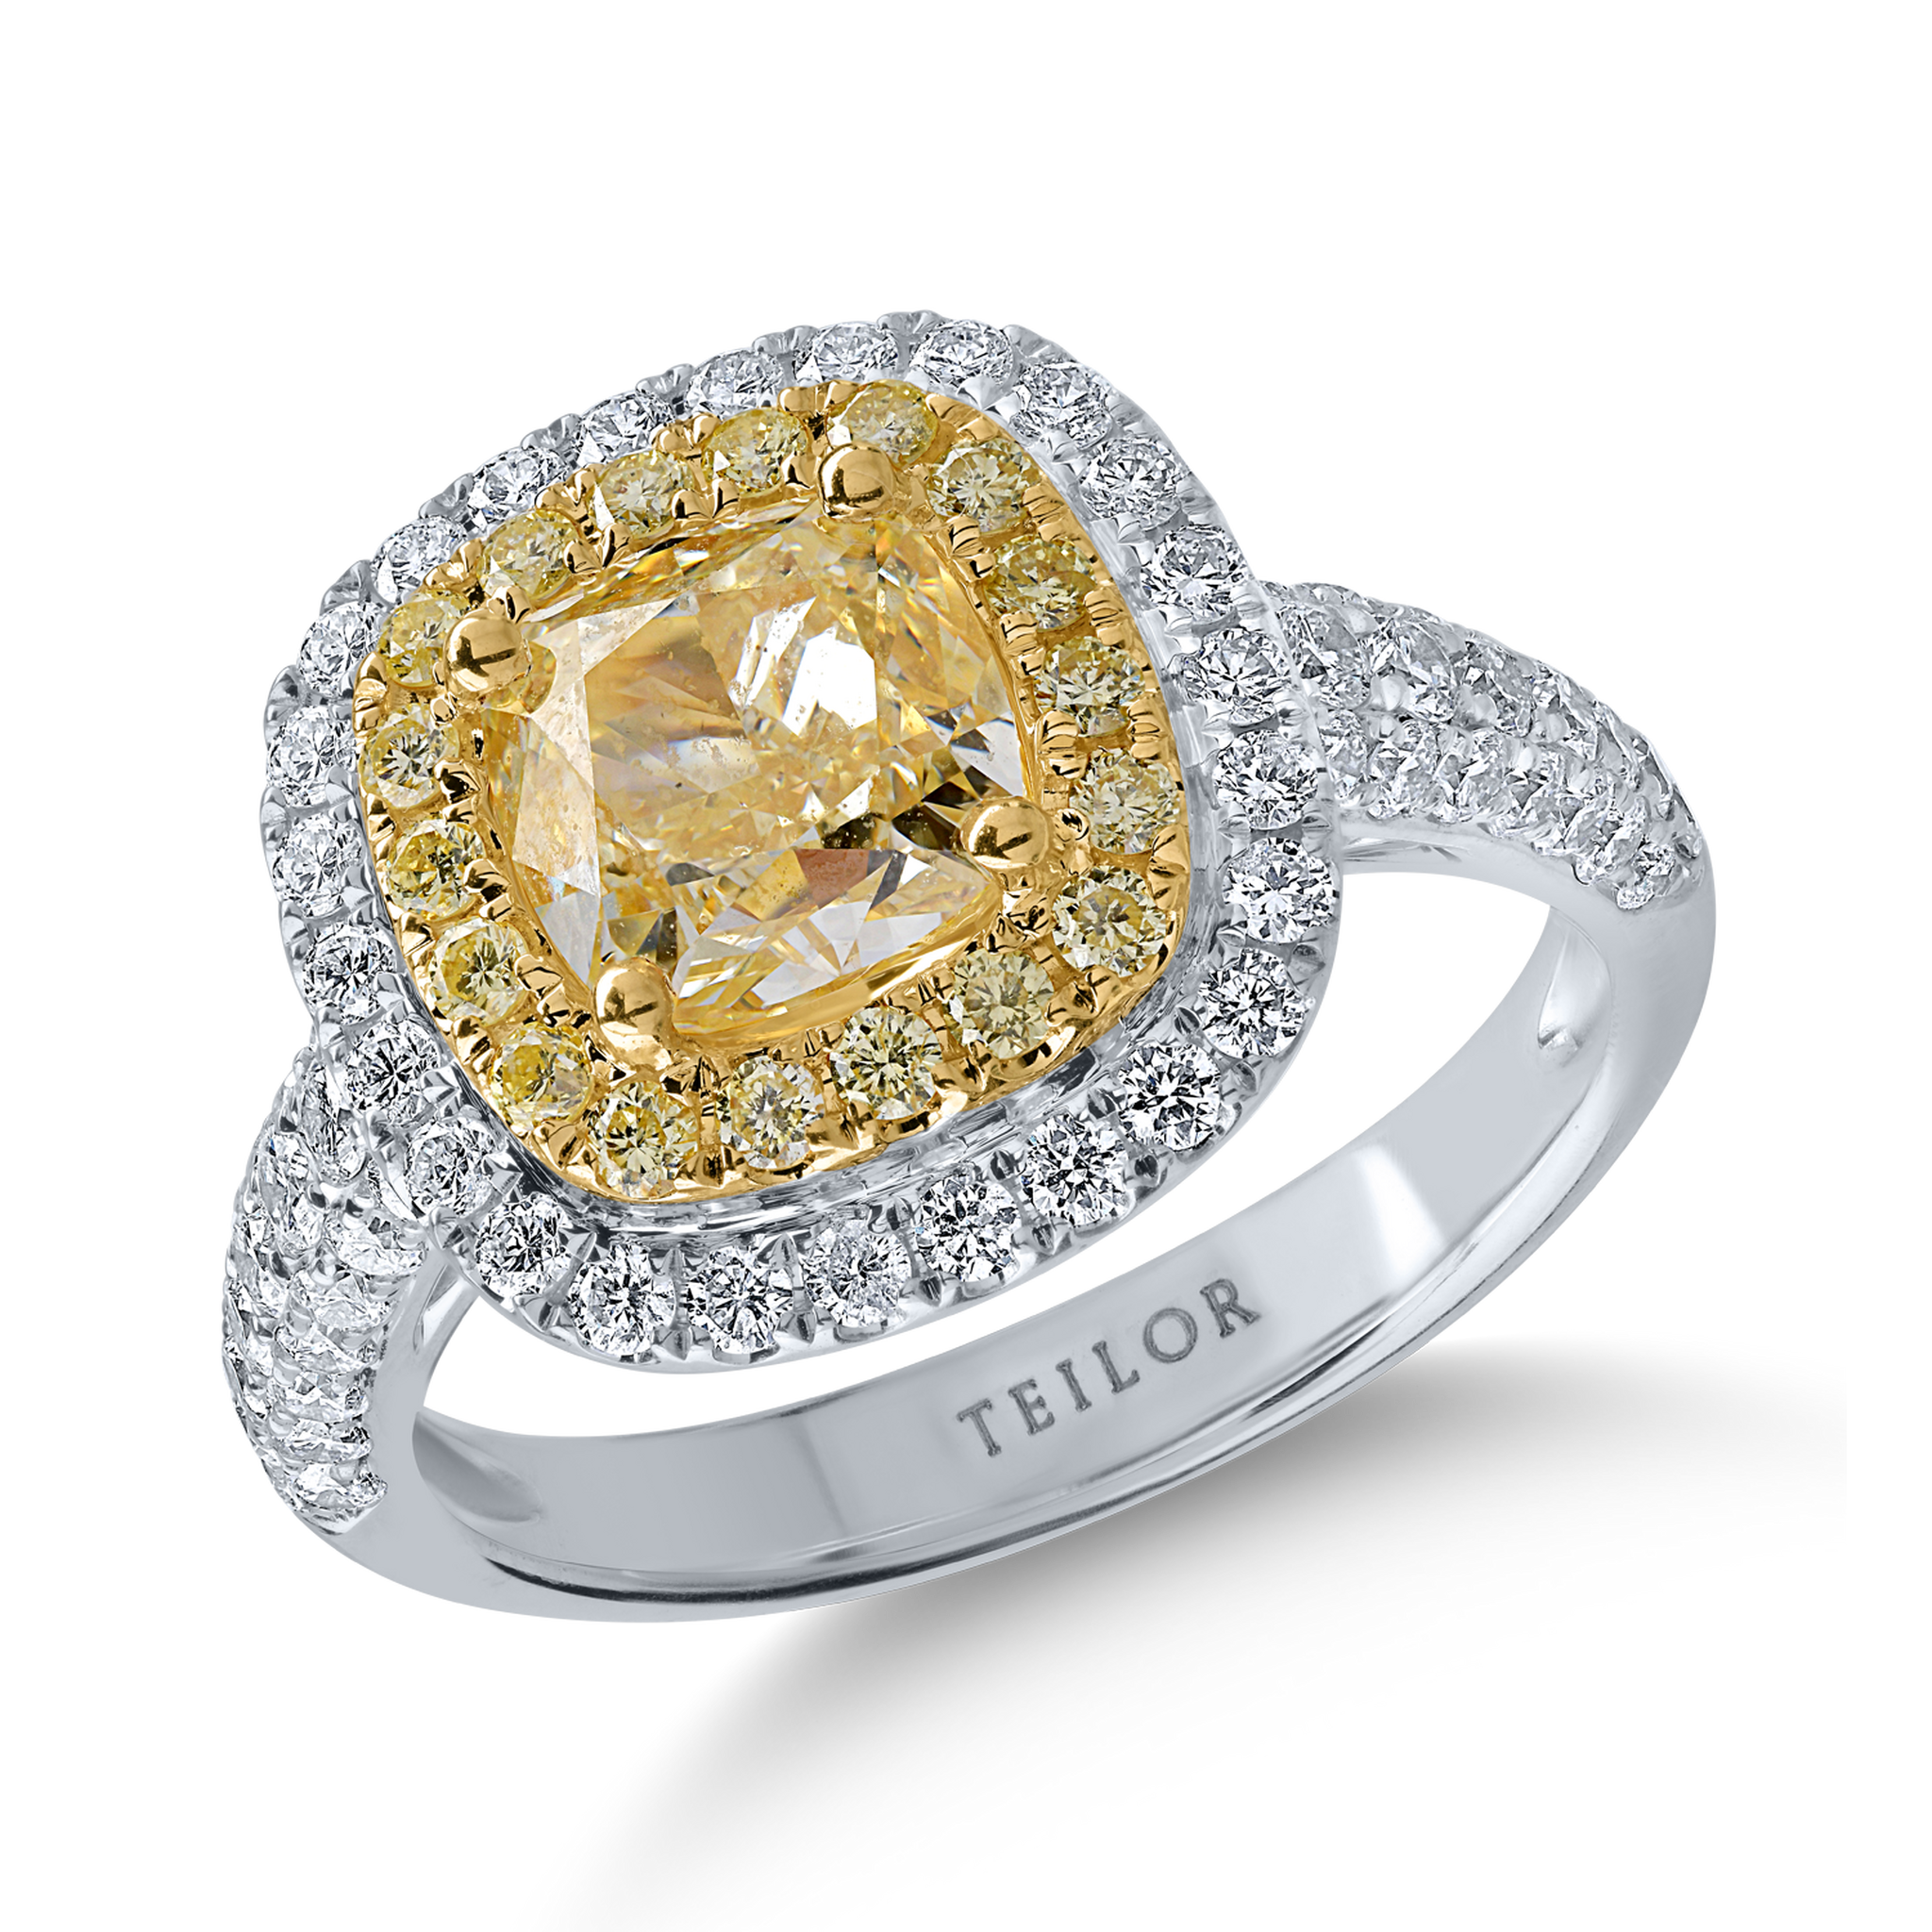 Pierścionek z biało-żółtego złota z żółtymi diamentami o masie 2.31ct i przezroczystymi diamentami o masie 0.87ct